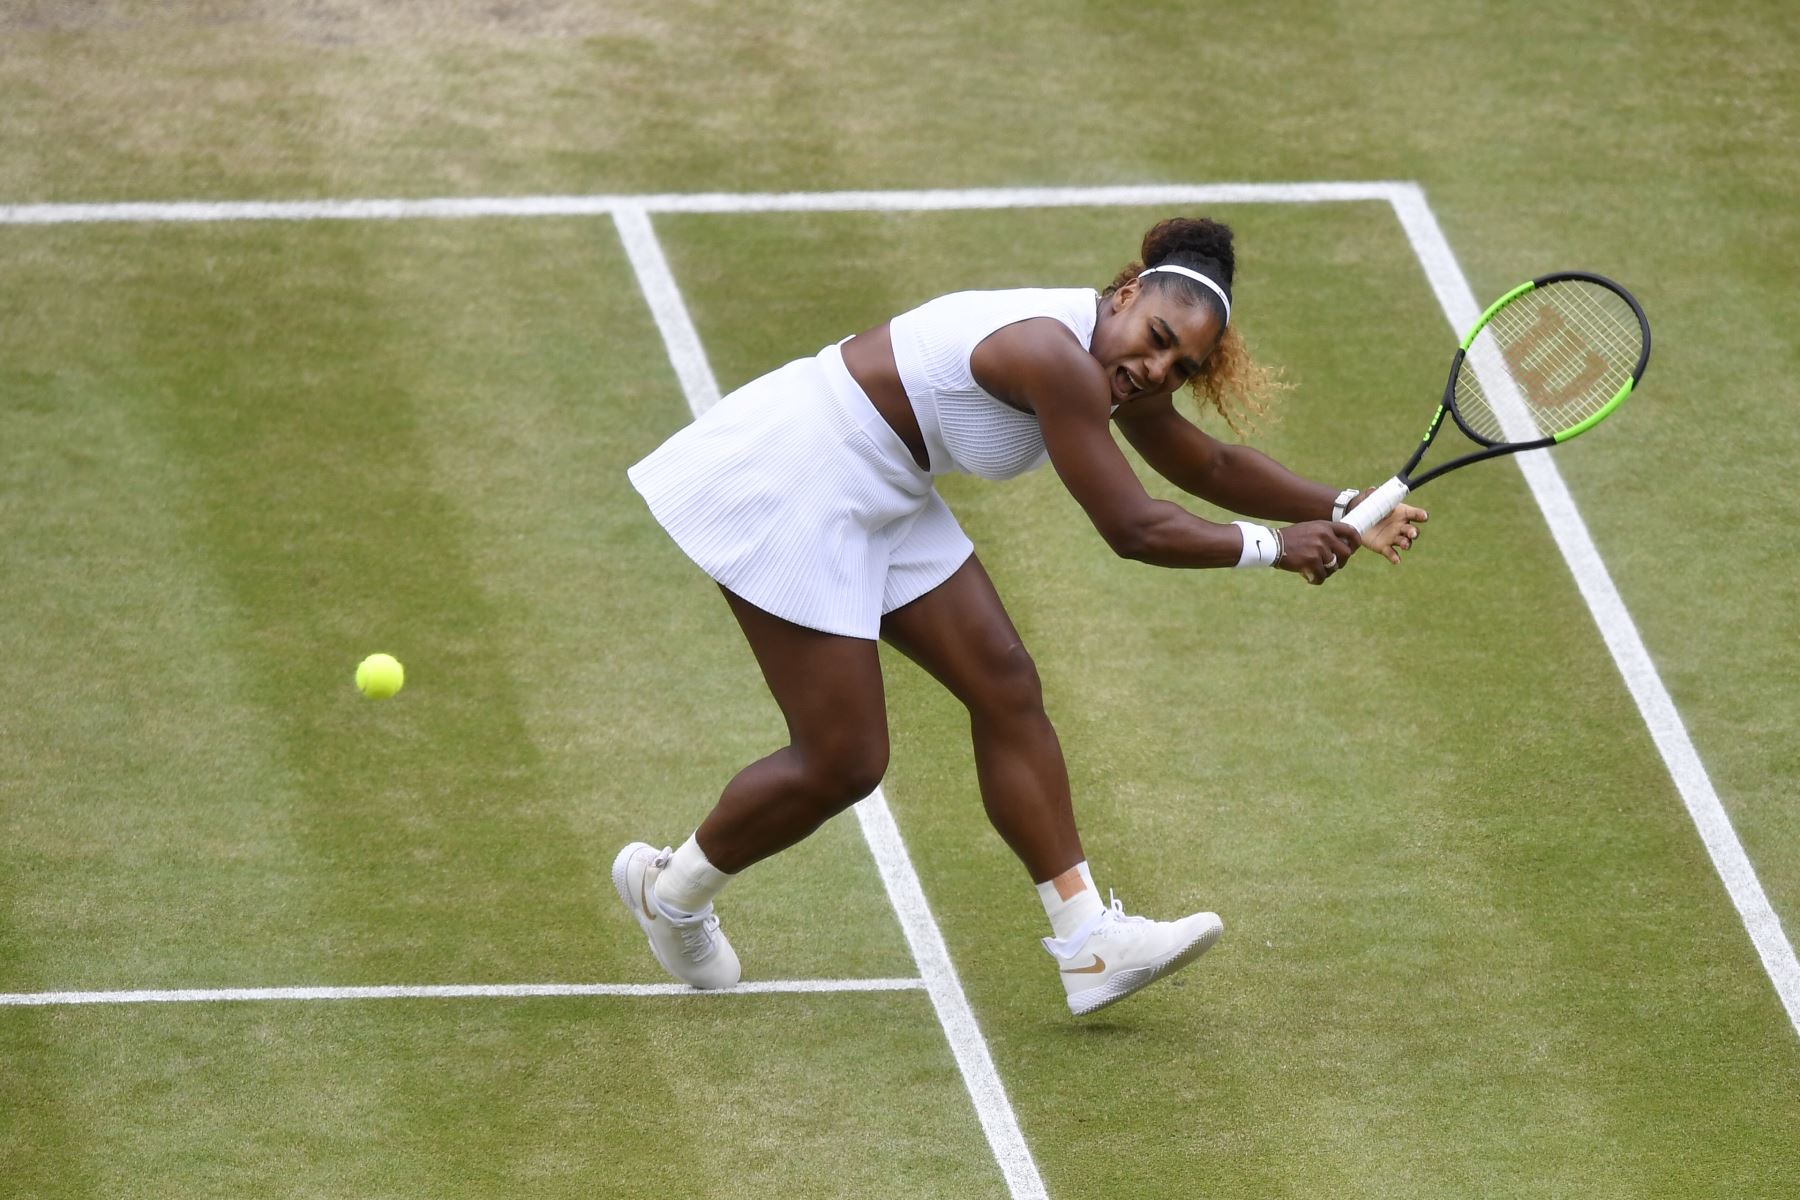 La jugadora estadounidense Serena Williams regresa contra la rumana Simona Halep durante su final de individuales femeninos en el día doce de los Campeonatos de Wimbledon 2019.
Foto: AFP